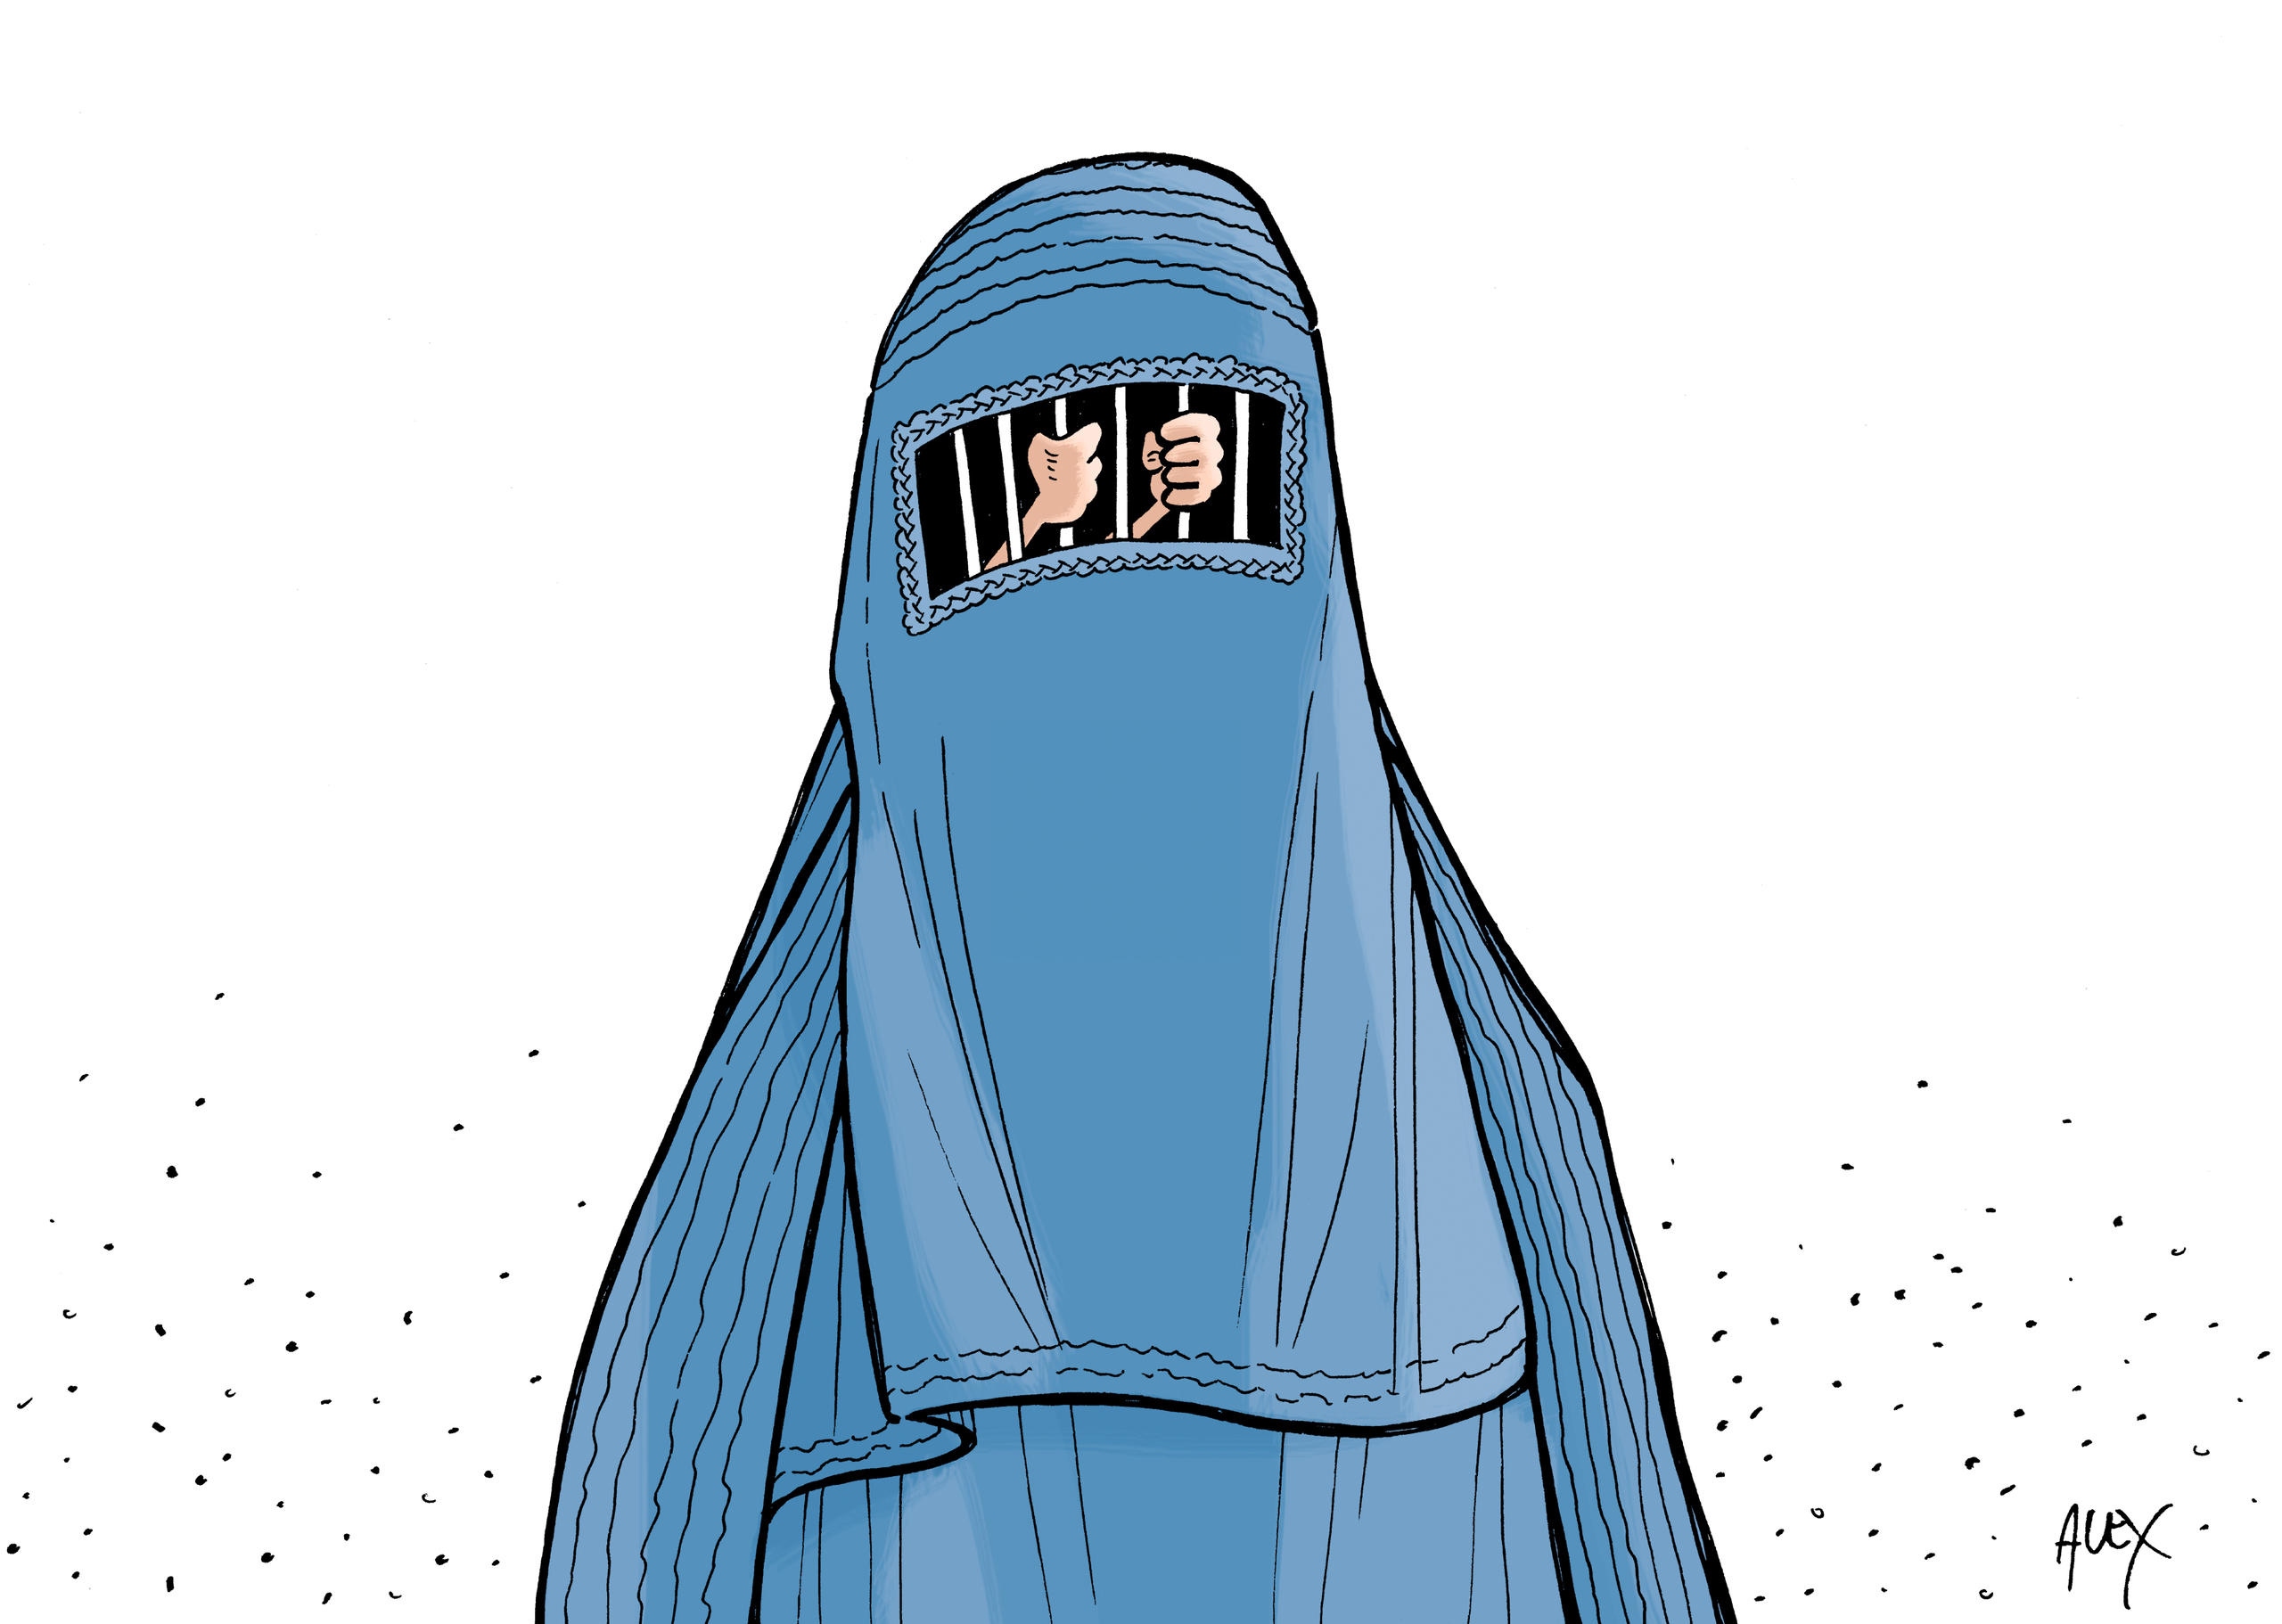 Burka con barrotes en la parte de los ojos, simbolizando una cárcel